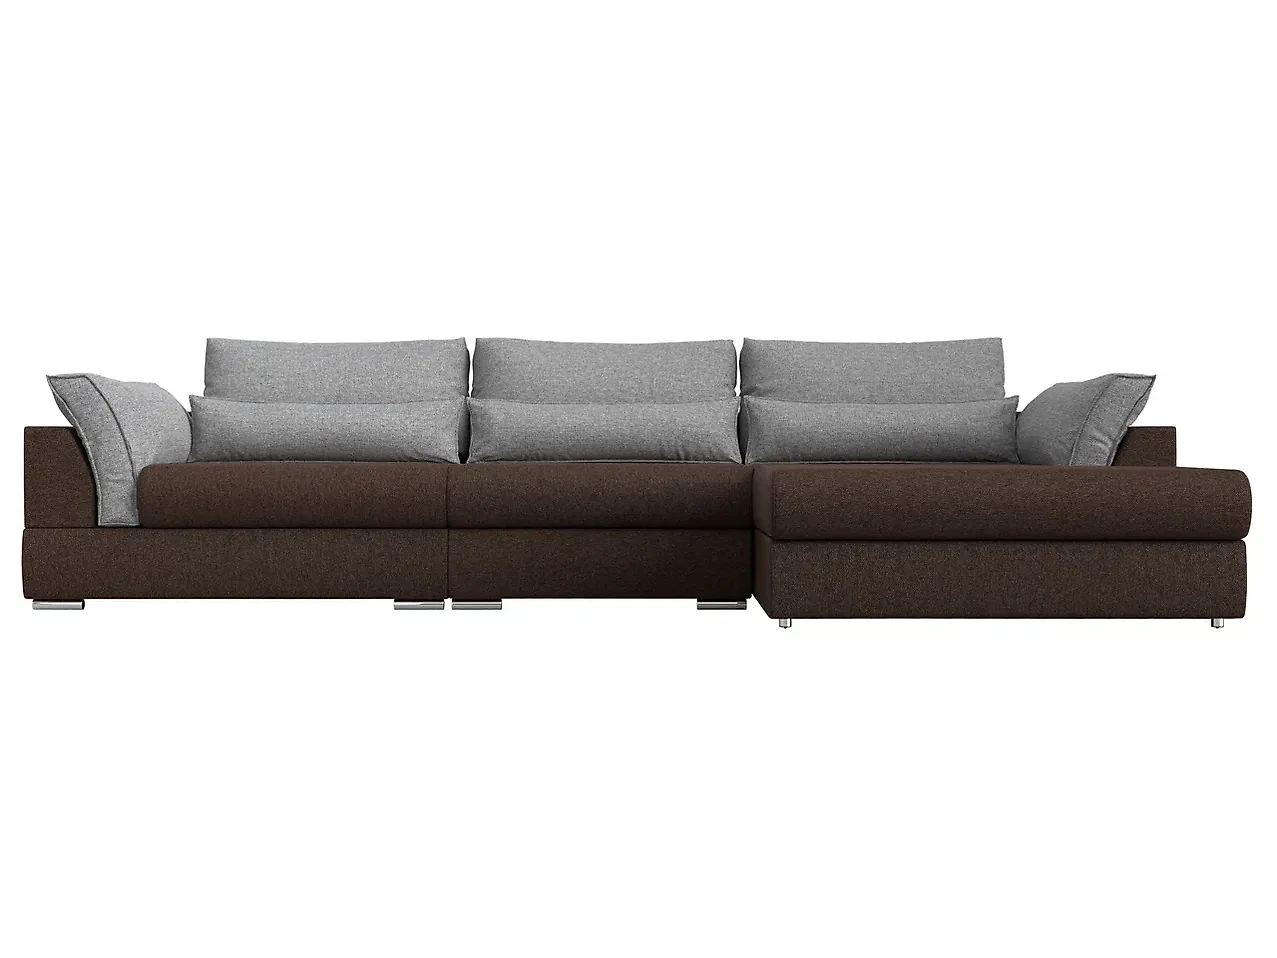  угловой диван из рогожки Пекин Лонг Кантри Дизайн 6